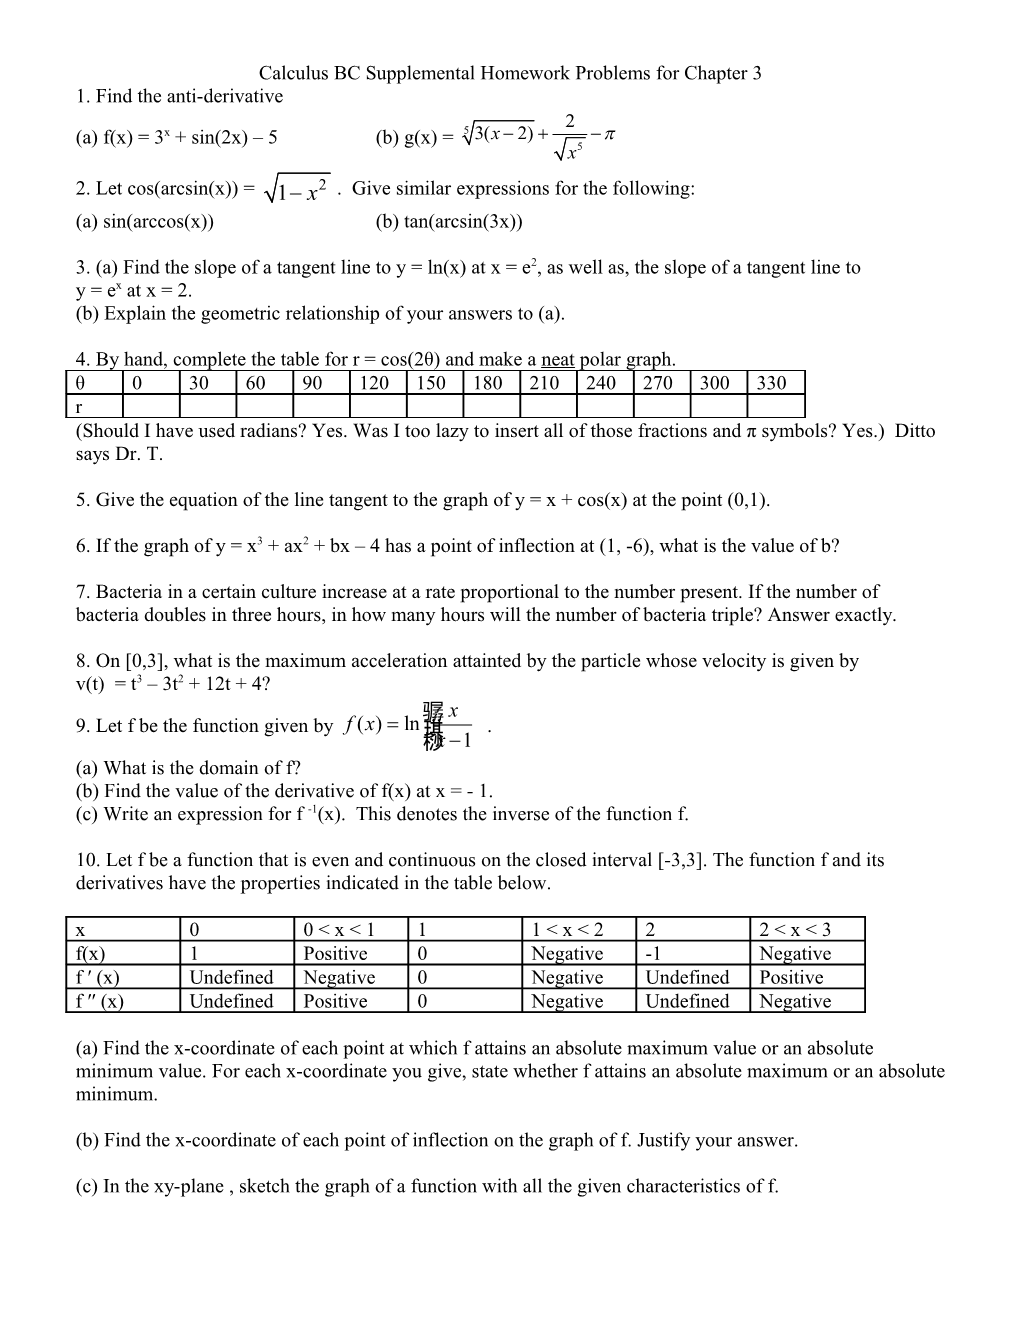 Calculus BC Supplemental Homework Sheet Chapter 2